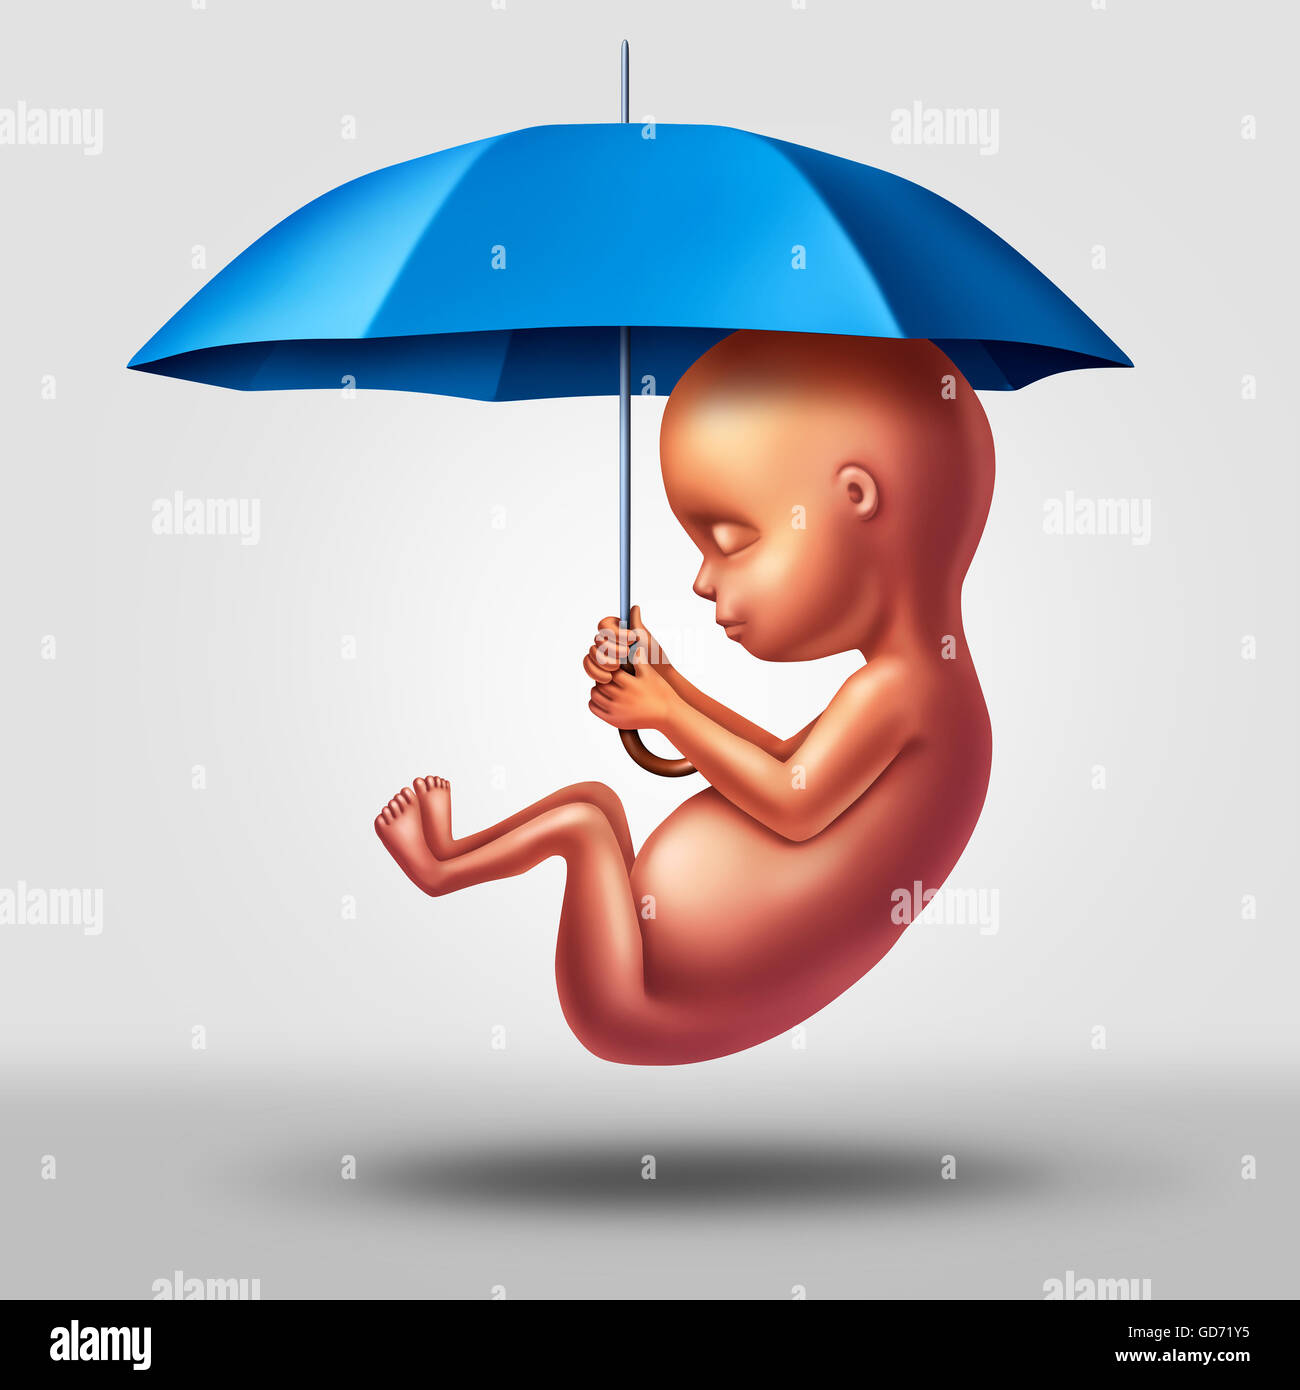 Schwangerschaft medizinische Schutzsymbol als eines menschlichen Fötus hält einen Regenschirm als Gesundheitswesen Pränatalmedizin Konzept, Krankheit auf das ungeborene Kind mit 3D Abbildung Elemente zu verhindern. Stockfoto